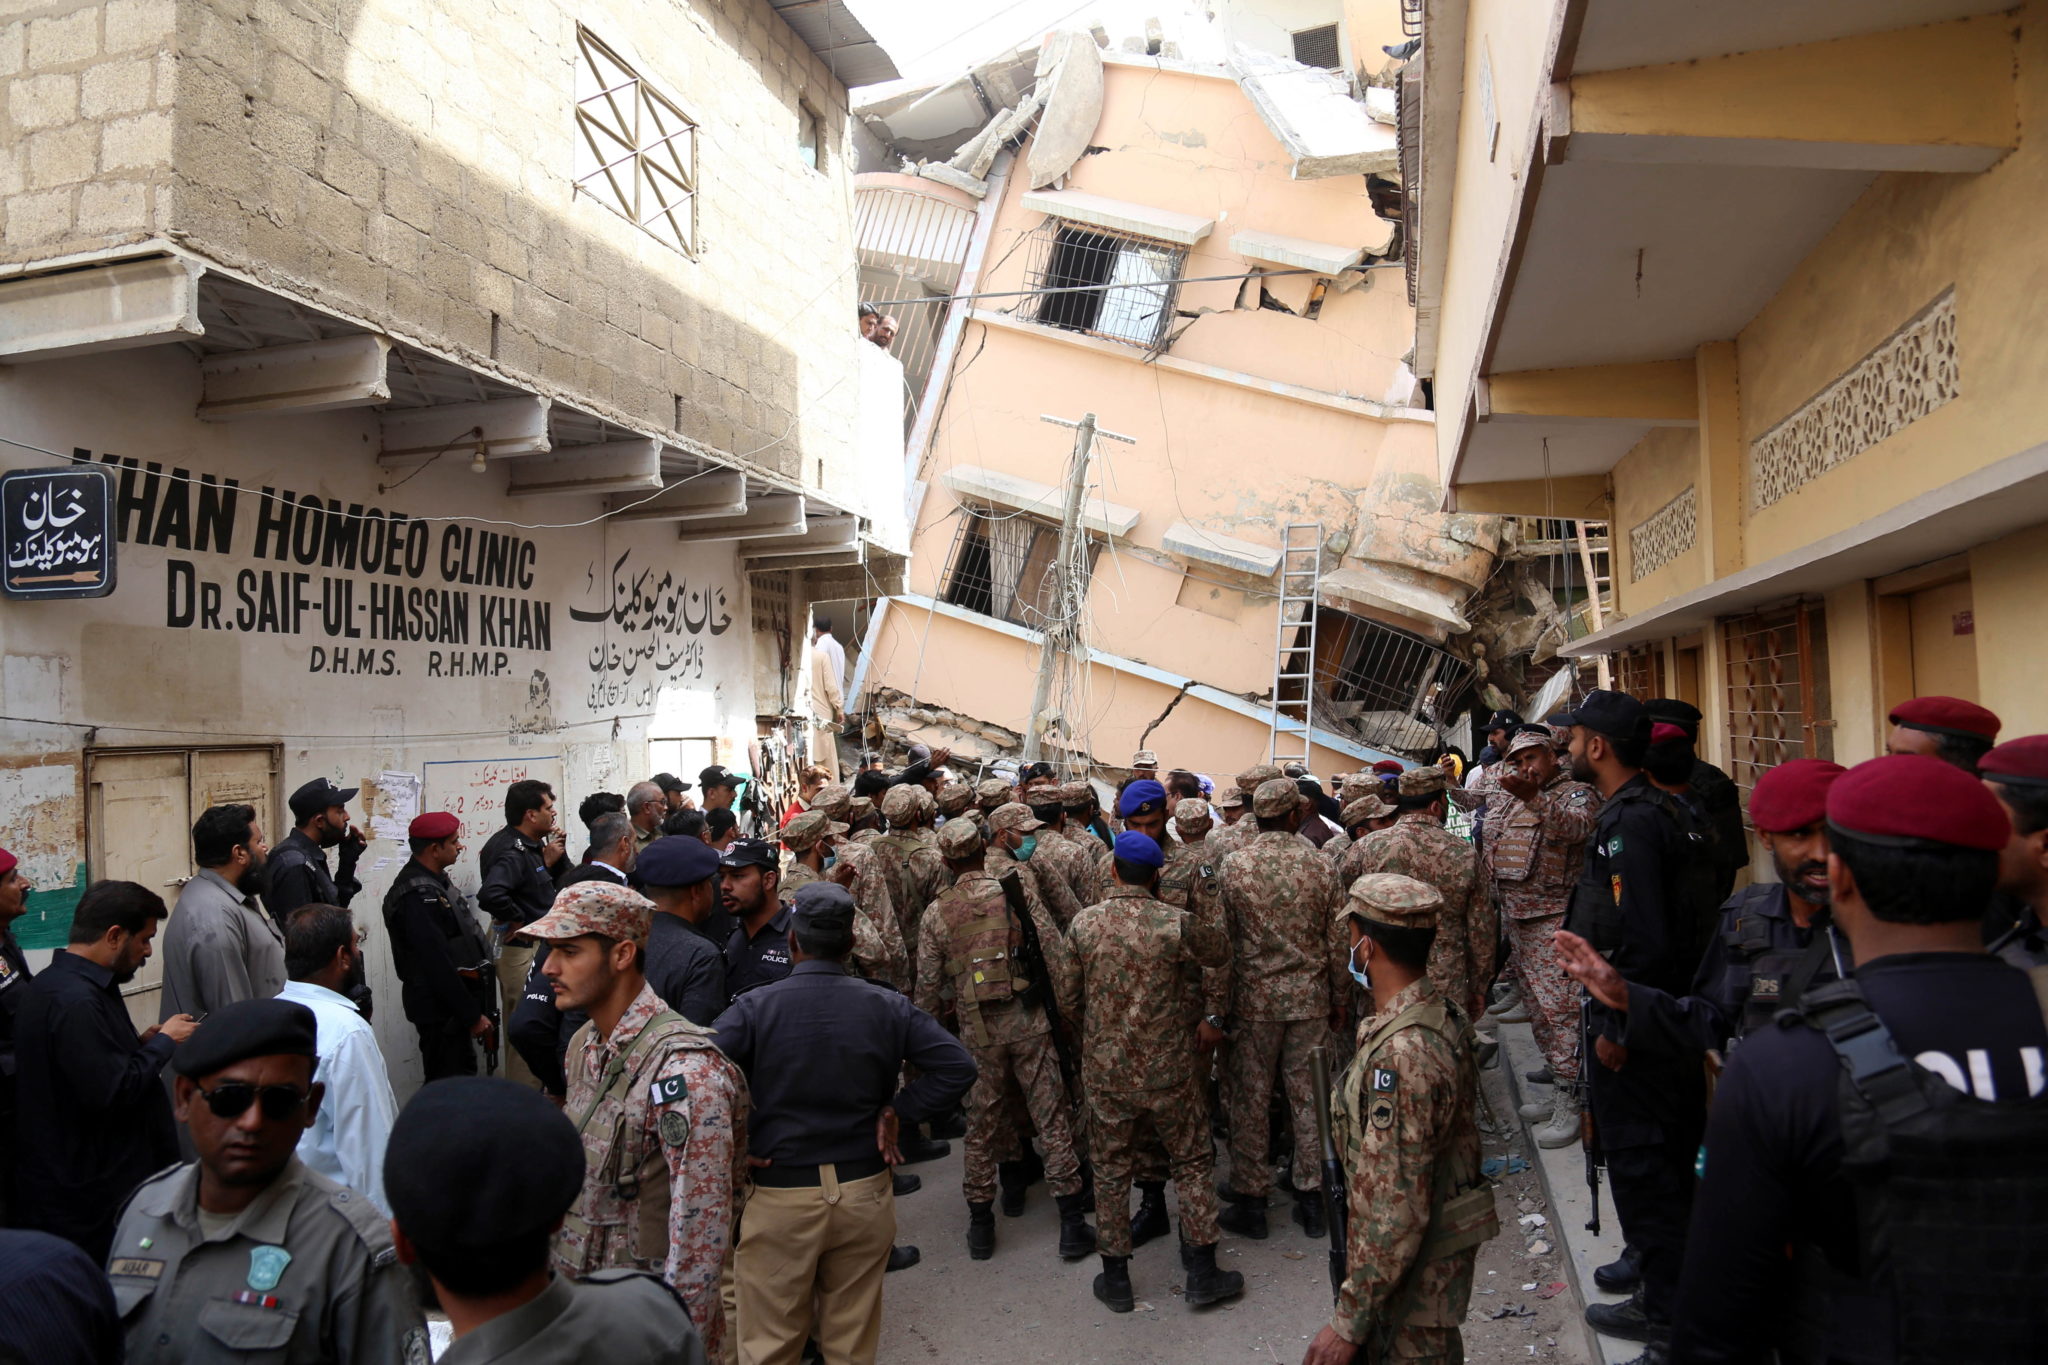 Zawalenie się budynku w Pakistanie. Zginęły 4 osoby, ponad 20 zostało rannych EPA/REHAN KHAN 
